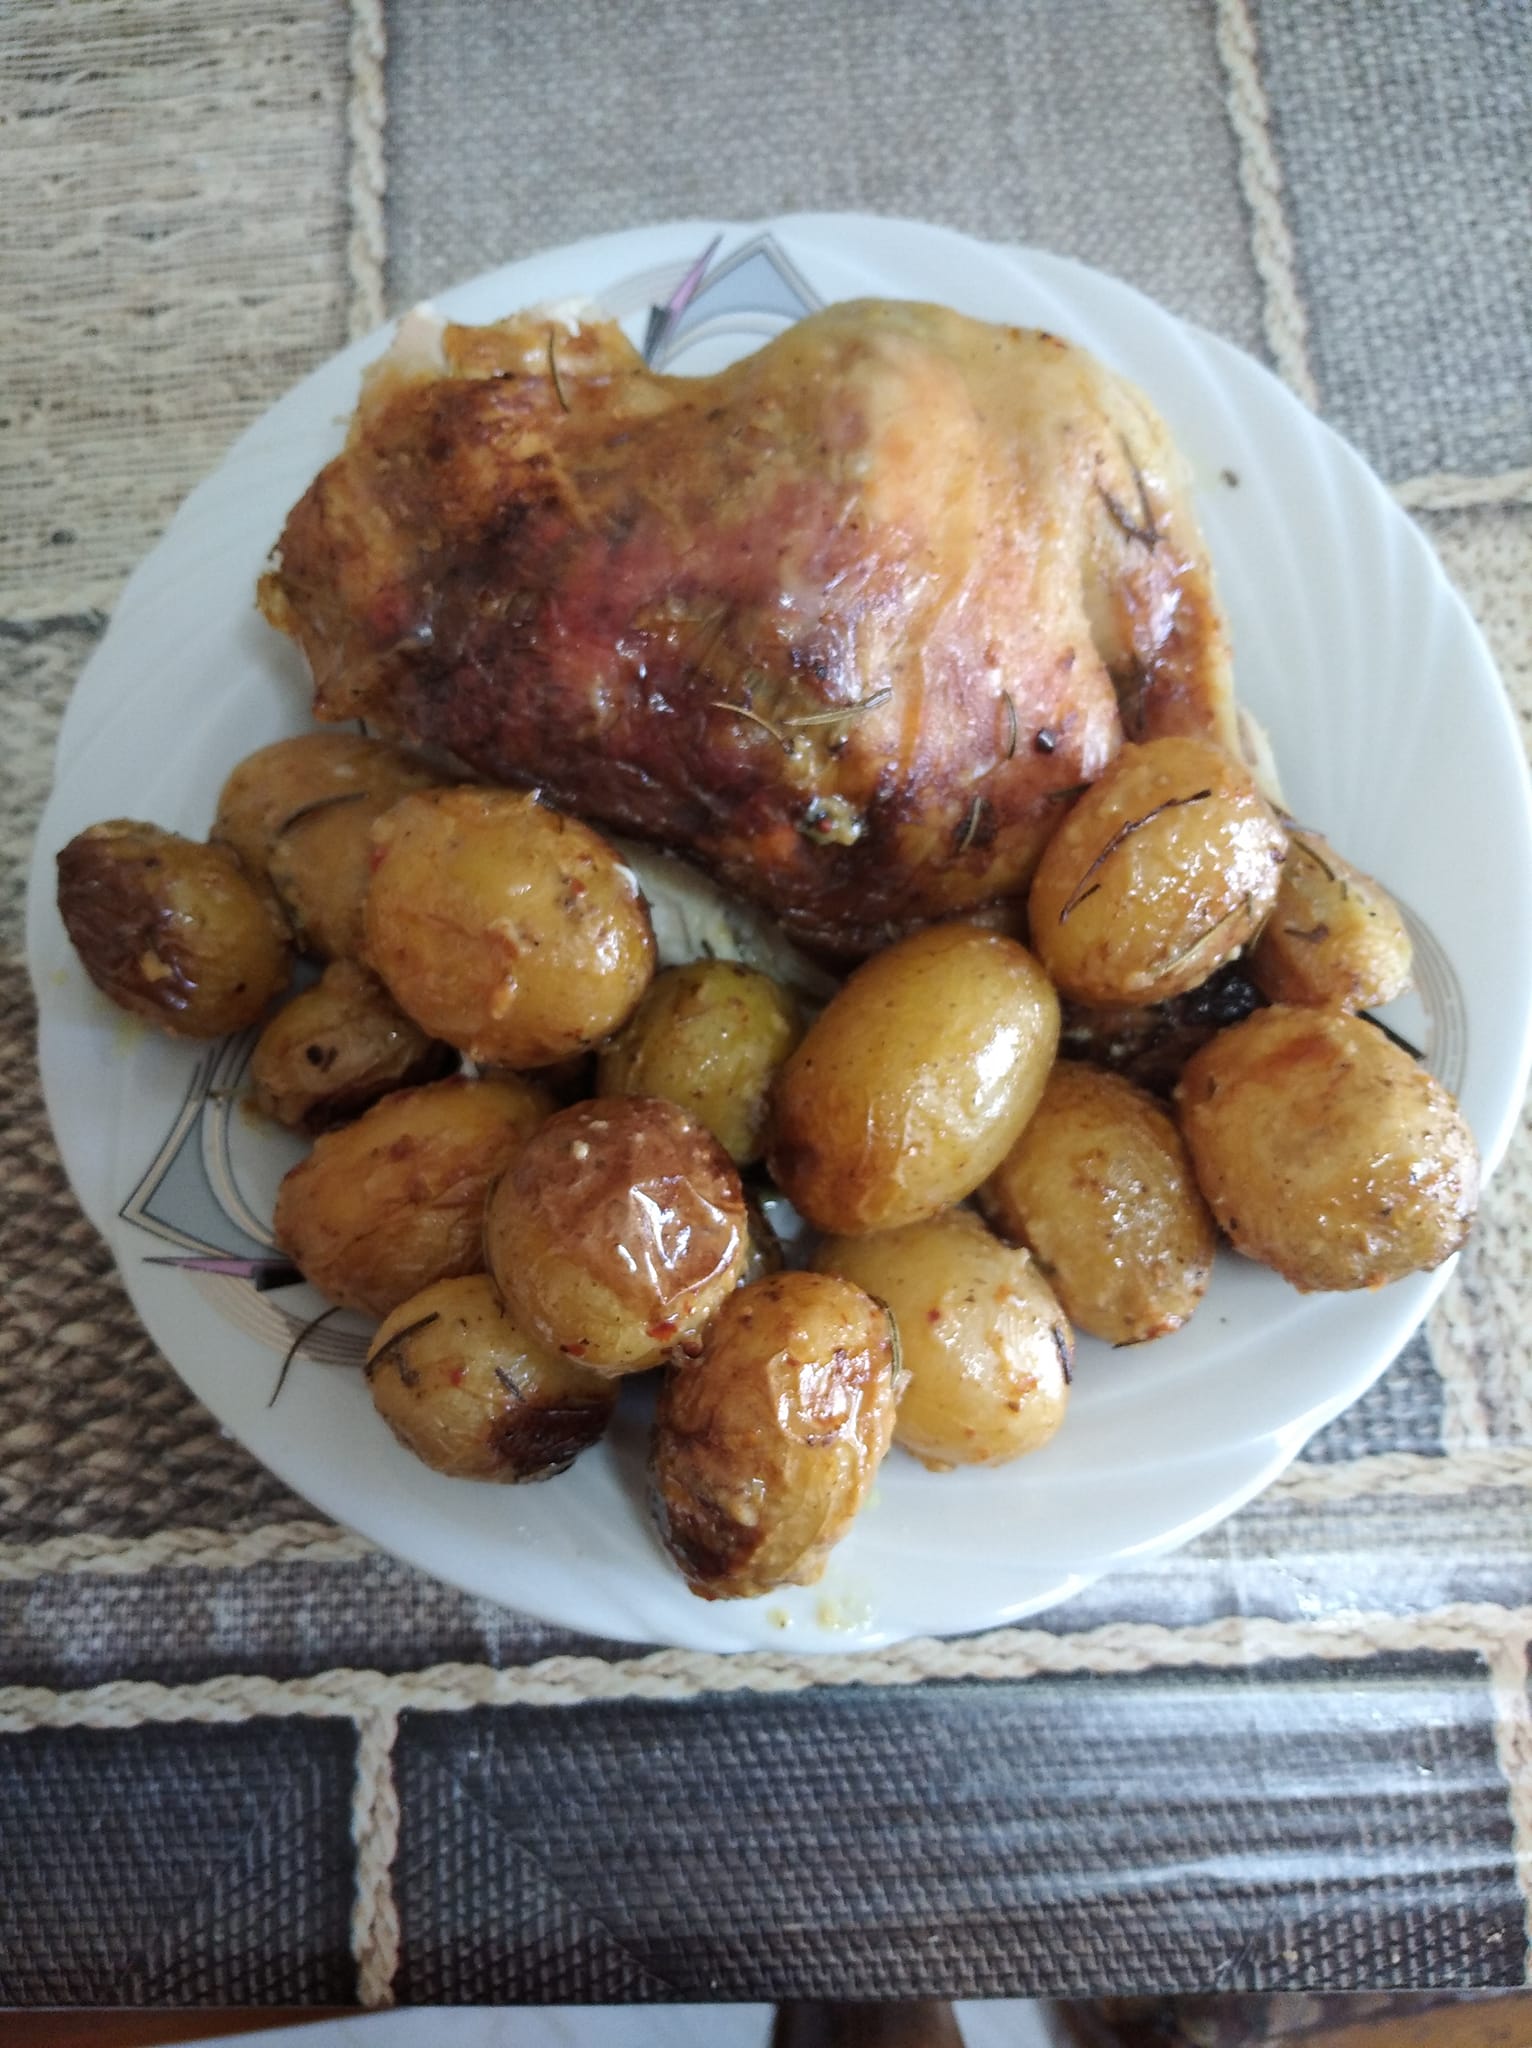 Neser, e diel, si dite pushimi ju ftojme te gatuani pule me patate franceze